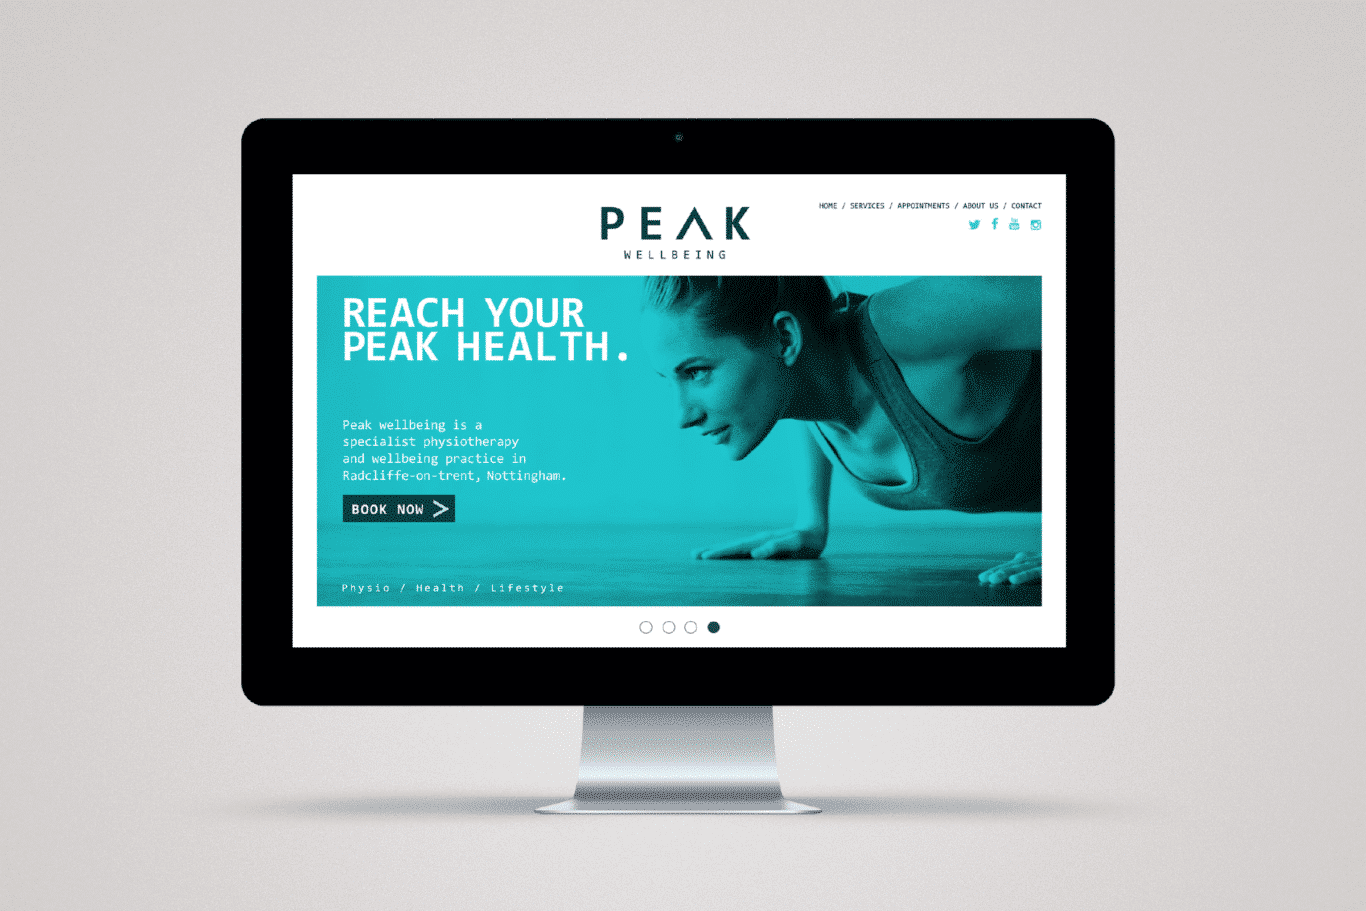 Rebrand - Peak Wellbeing - Website displayed on large display